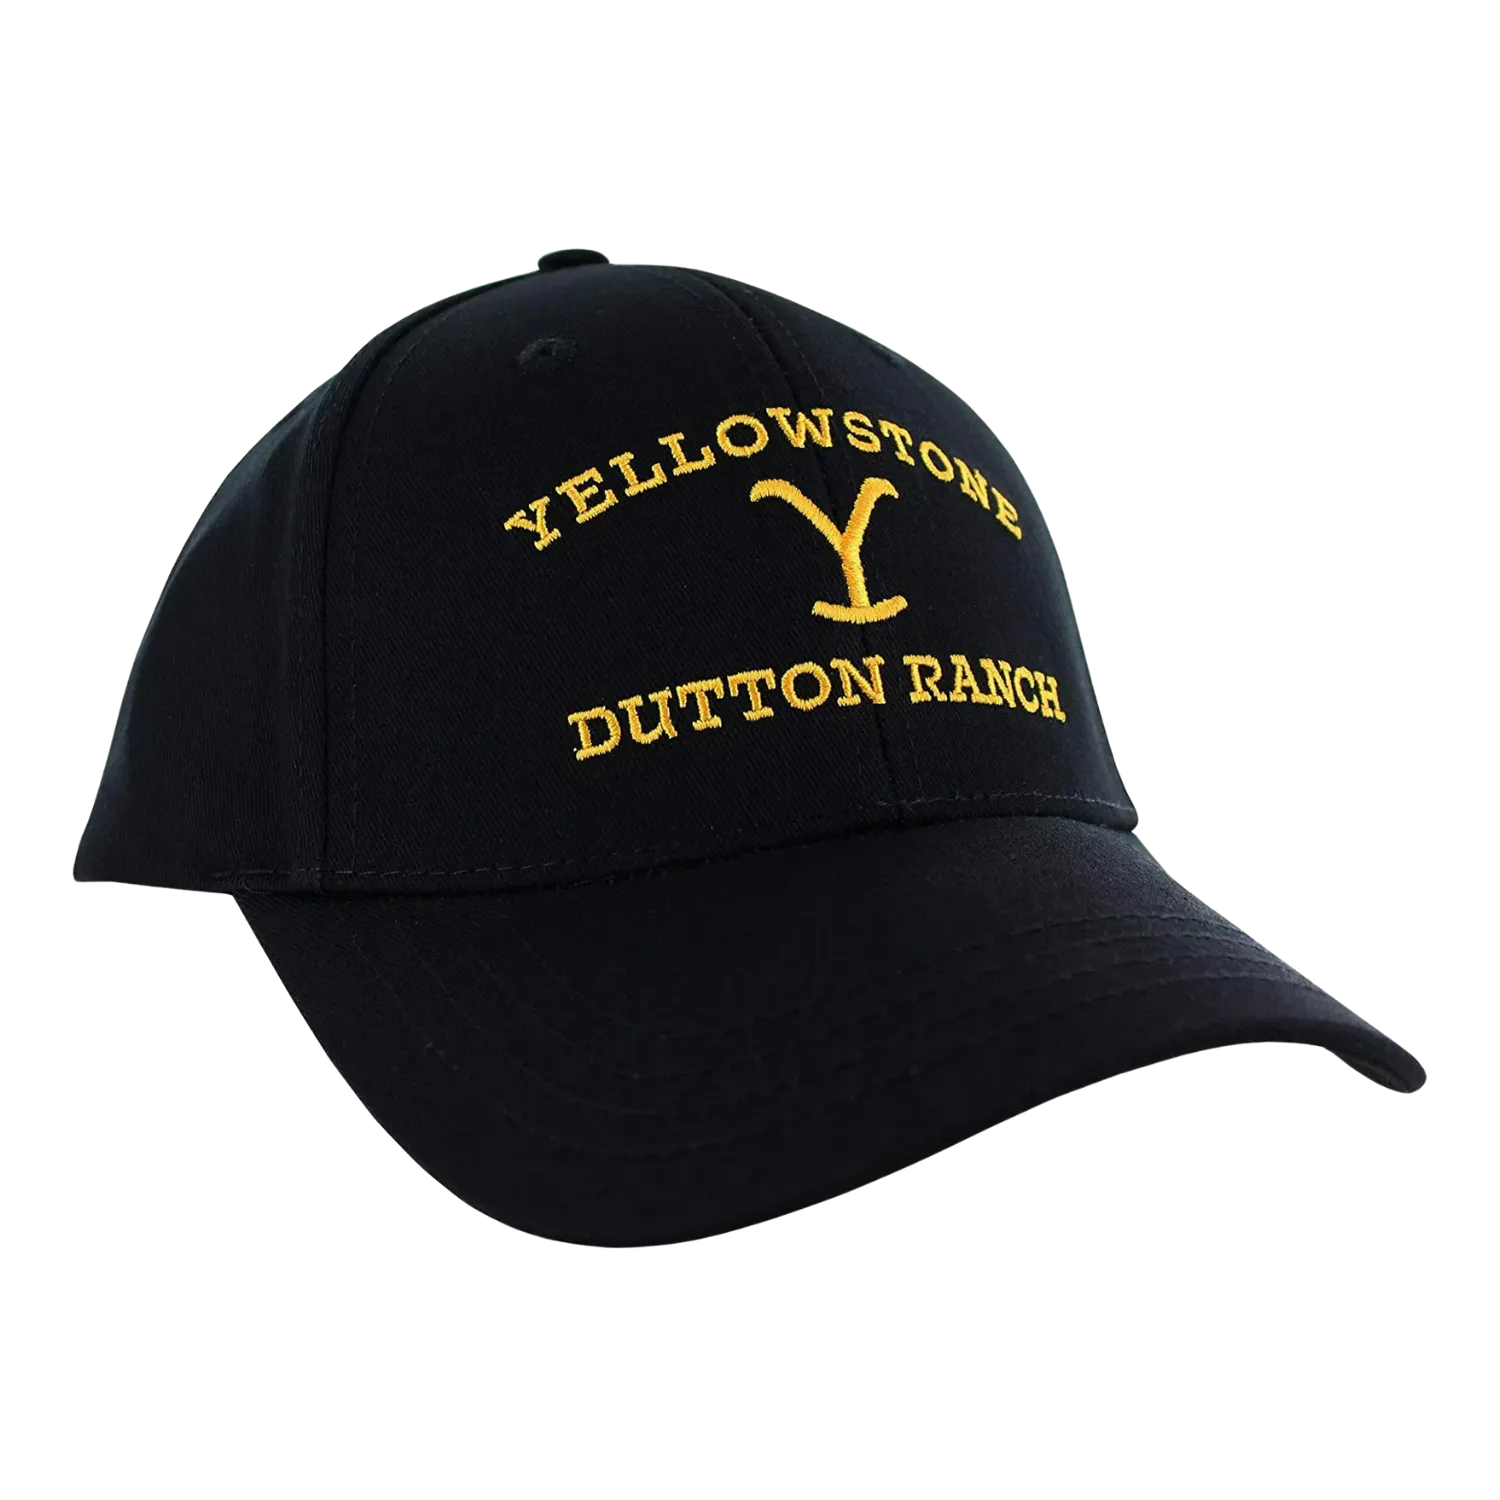 Gorra ajustable de Yellowstone Dutton Ranch